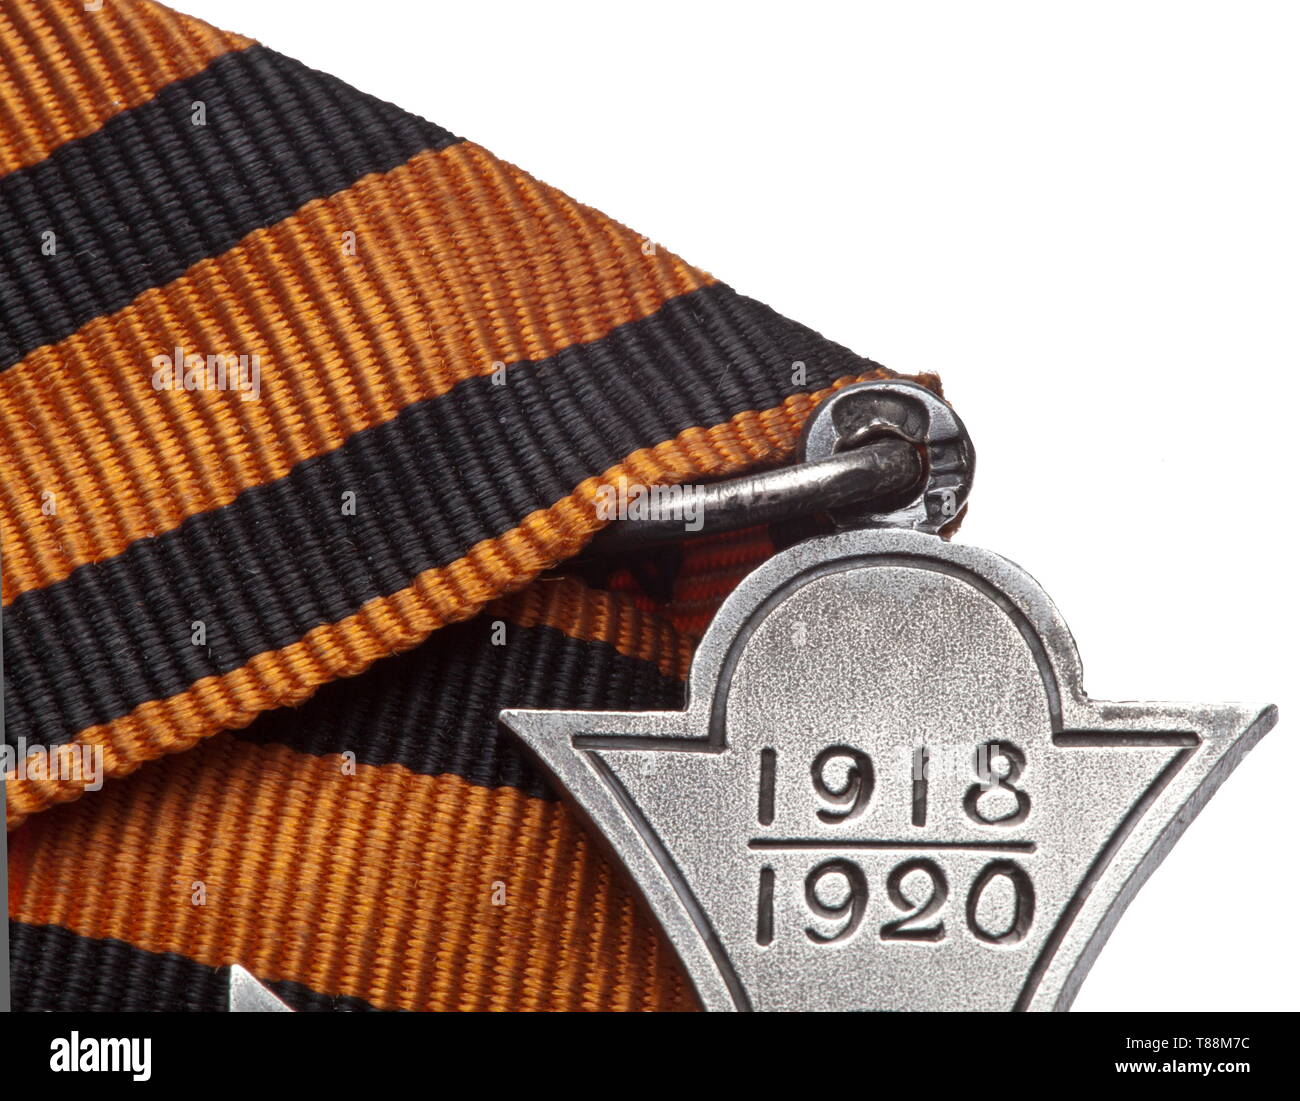 Eine russische Kreuz für Treue und Service 1918-1920 das Kreuz in Silber mit angewandten Russischen Doppeladler aus vergoldetem Silber mit zwei Nieten befestigt. Die Vorderseite trägt die eingravierte Name der Auszeichnung, während umgekehrt die Registrierungsnummer' Nr. trägt 1', und der Name des Trägers "Generalleutnant Glasenapp'. Die Öse trägt die Polnische Stempel '2' für 875 silber Feinheit, ein weiblicher Kopf und ein 'W'. Mit der ursprünglichen fünfeckiger Band des Ordens von St. Andrew. Breite 38,7 mm. Gewicht 11,9 g mit Band. Diese kaum bekannte des 20. Jahrhunderts, Additional-Rights - Clearance-Info - Not-Available Stockfoto